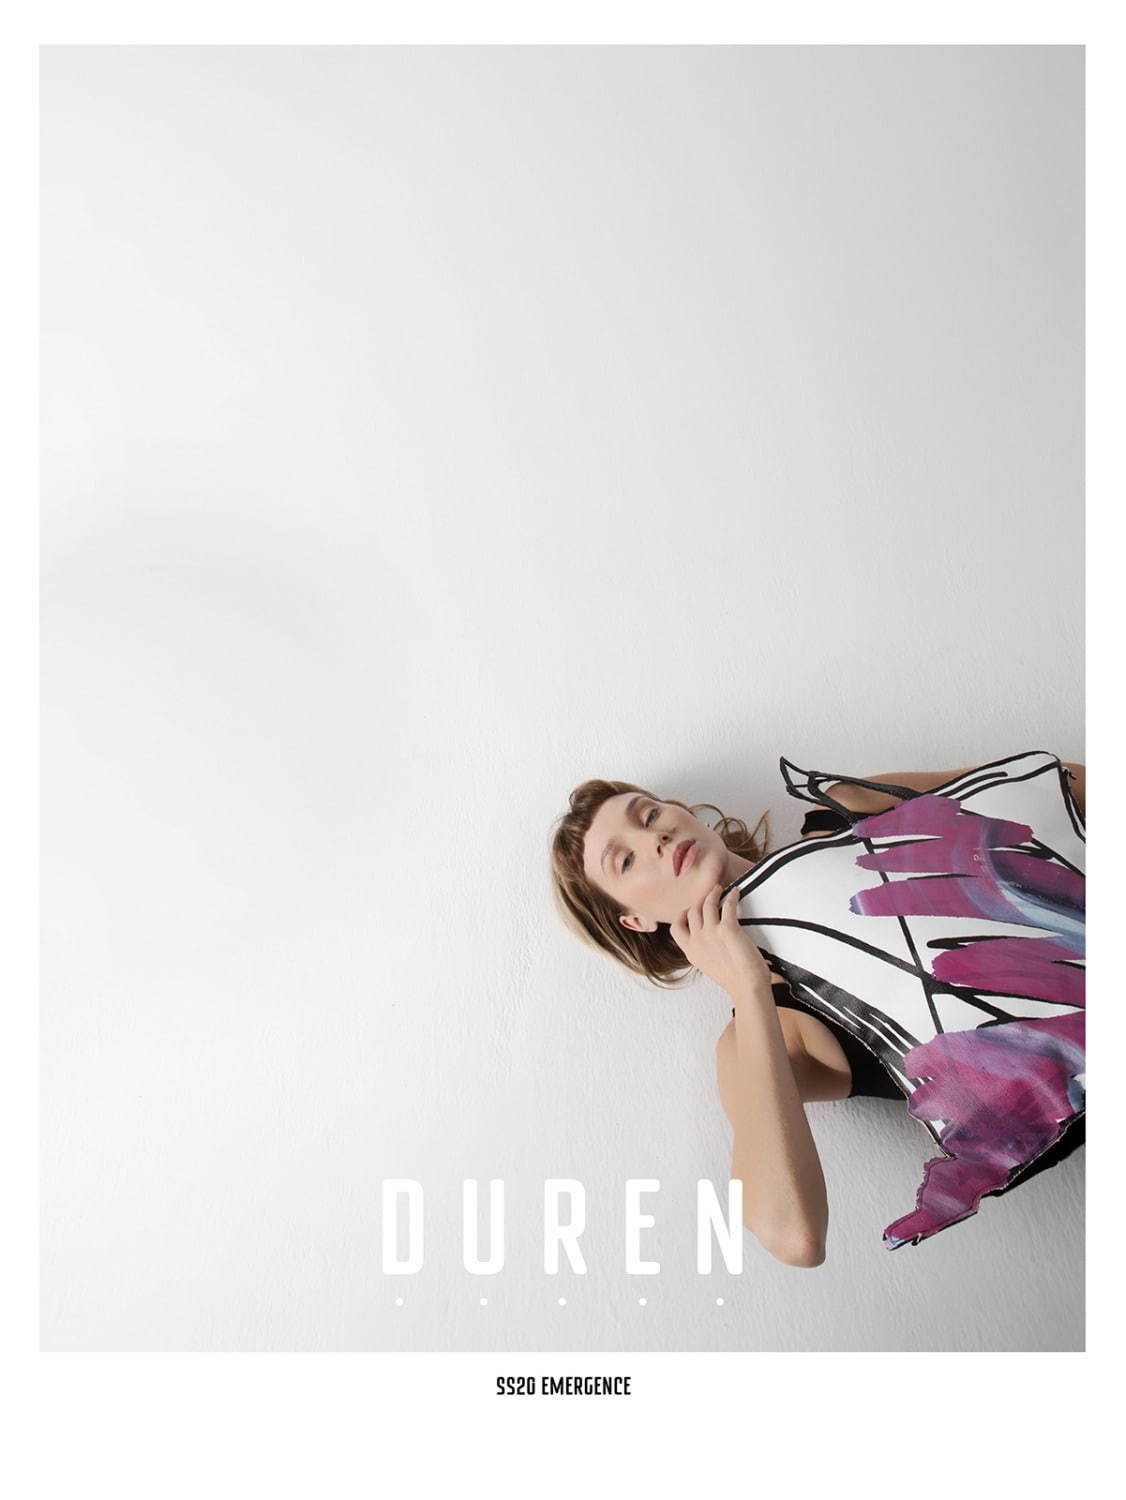 デューレン(DUREN) 2020年春夏ウィメンズコレクション  - 写真2